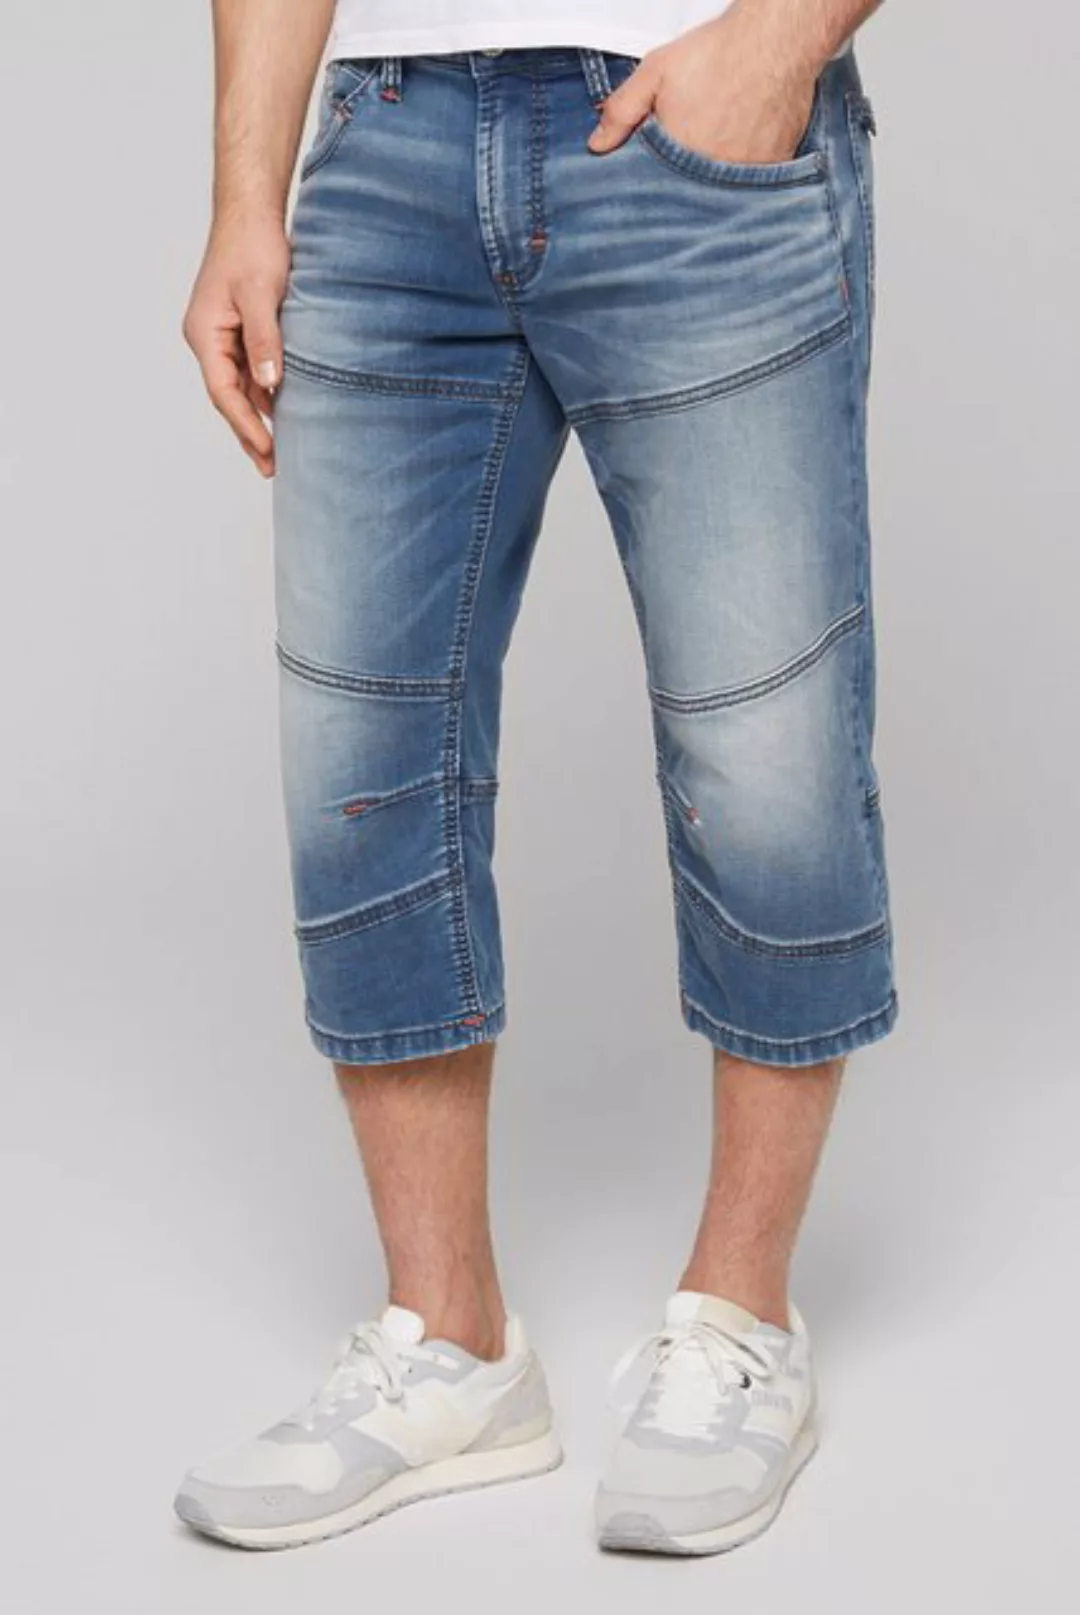 CAMP DAVID Jeansshorts mit normaler Leibhöhe günstig online kaufen